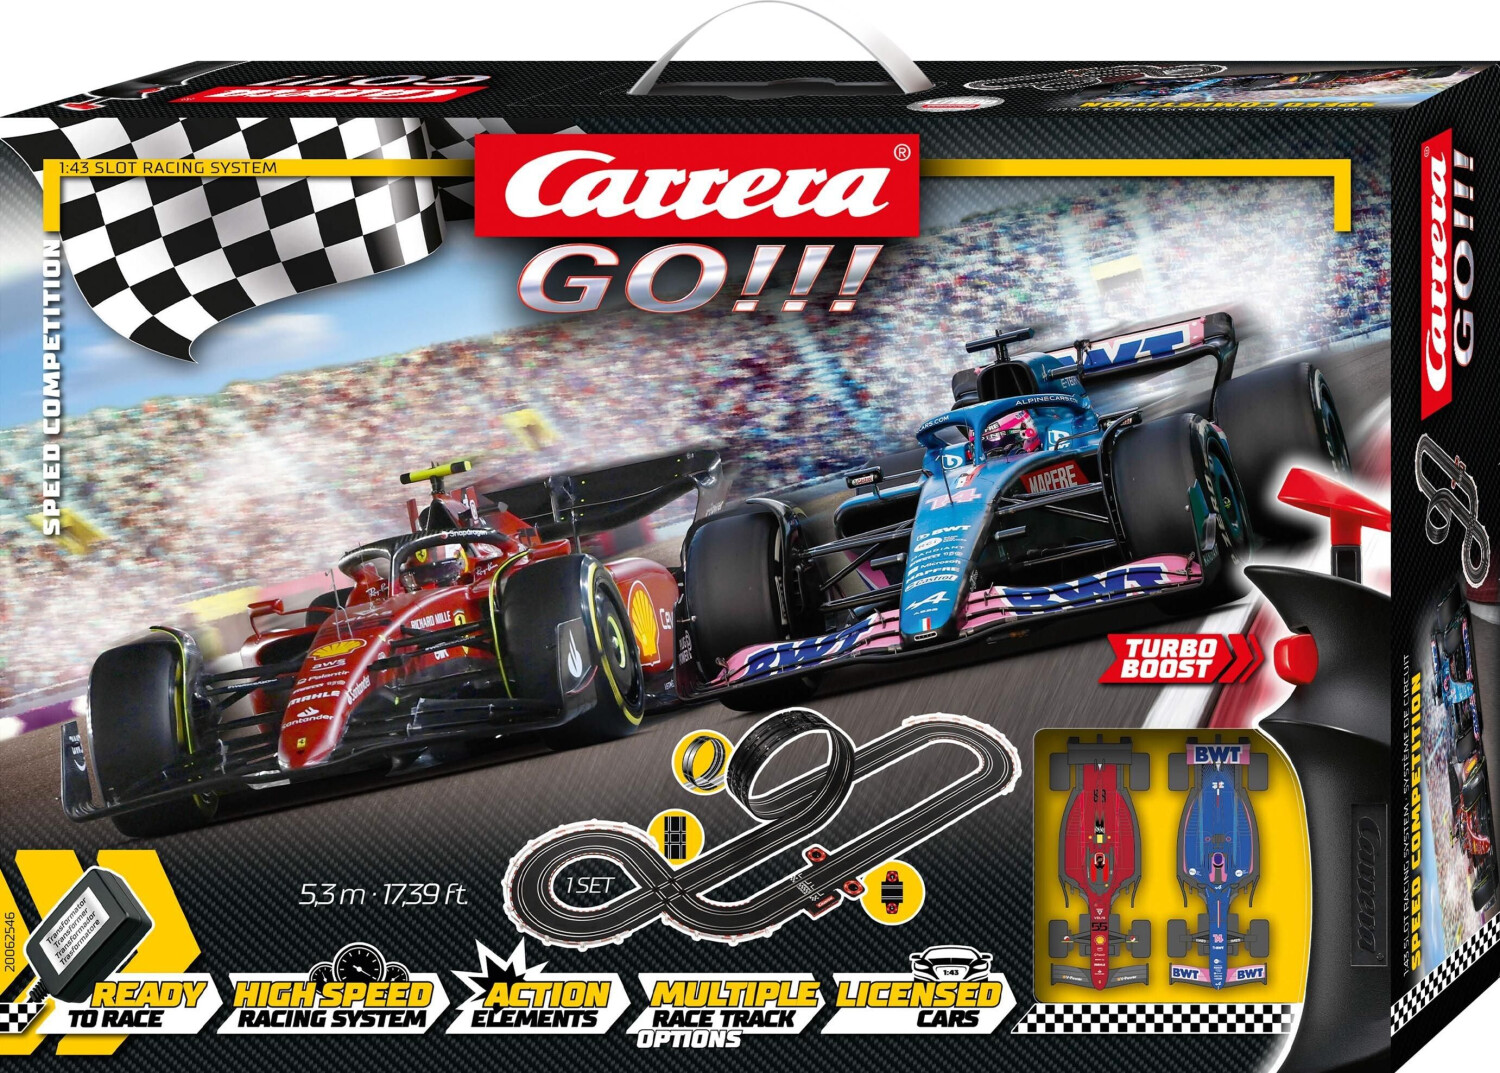 Carrera Go!!! Circuito de carreras y coche Hot Wheels 4,9 m